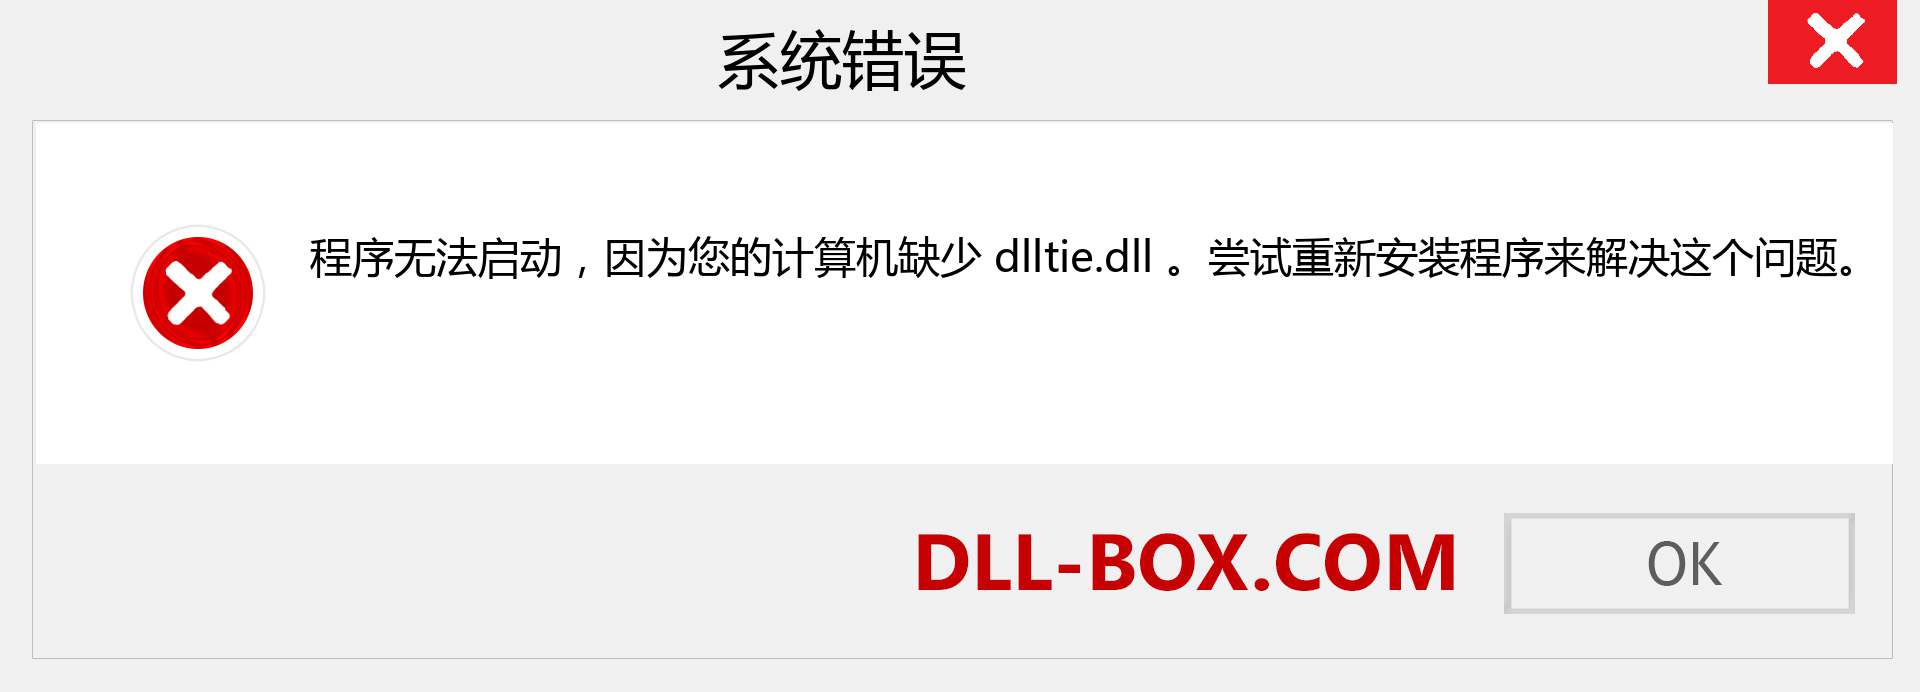 dlltie.dll 文件丢失？。 适用于 Windows 7、8、10 的下载 - 修复 Windows、照片、图像上的 dlltie dll 丢失错误